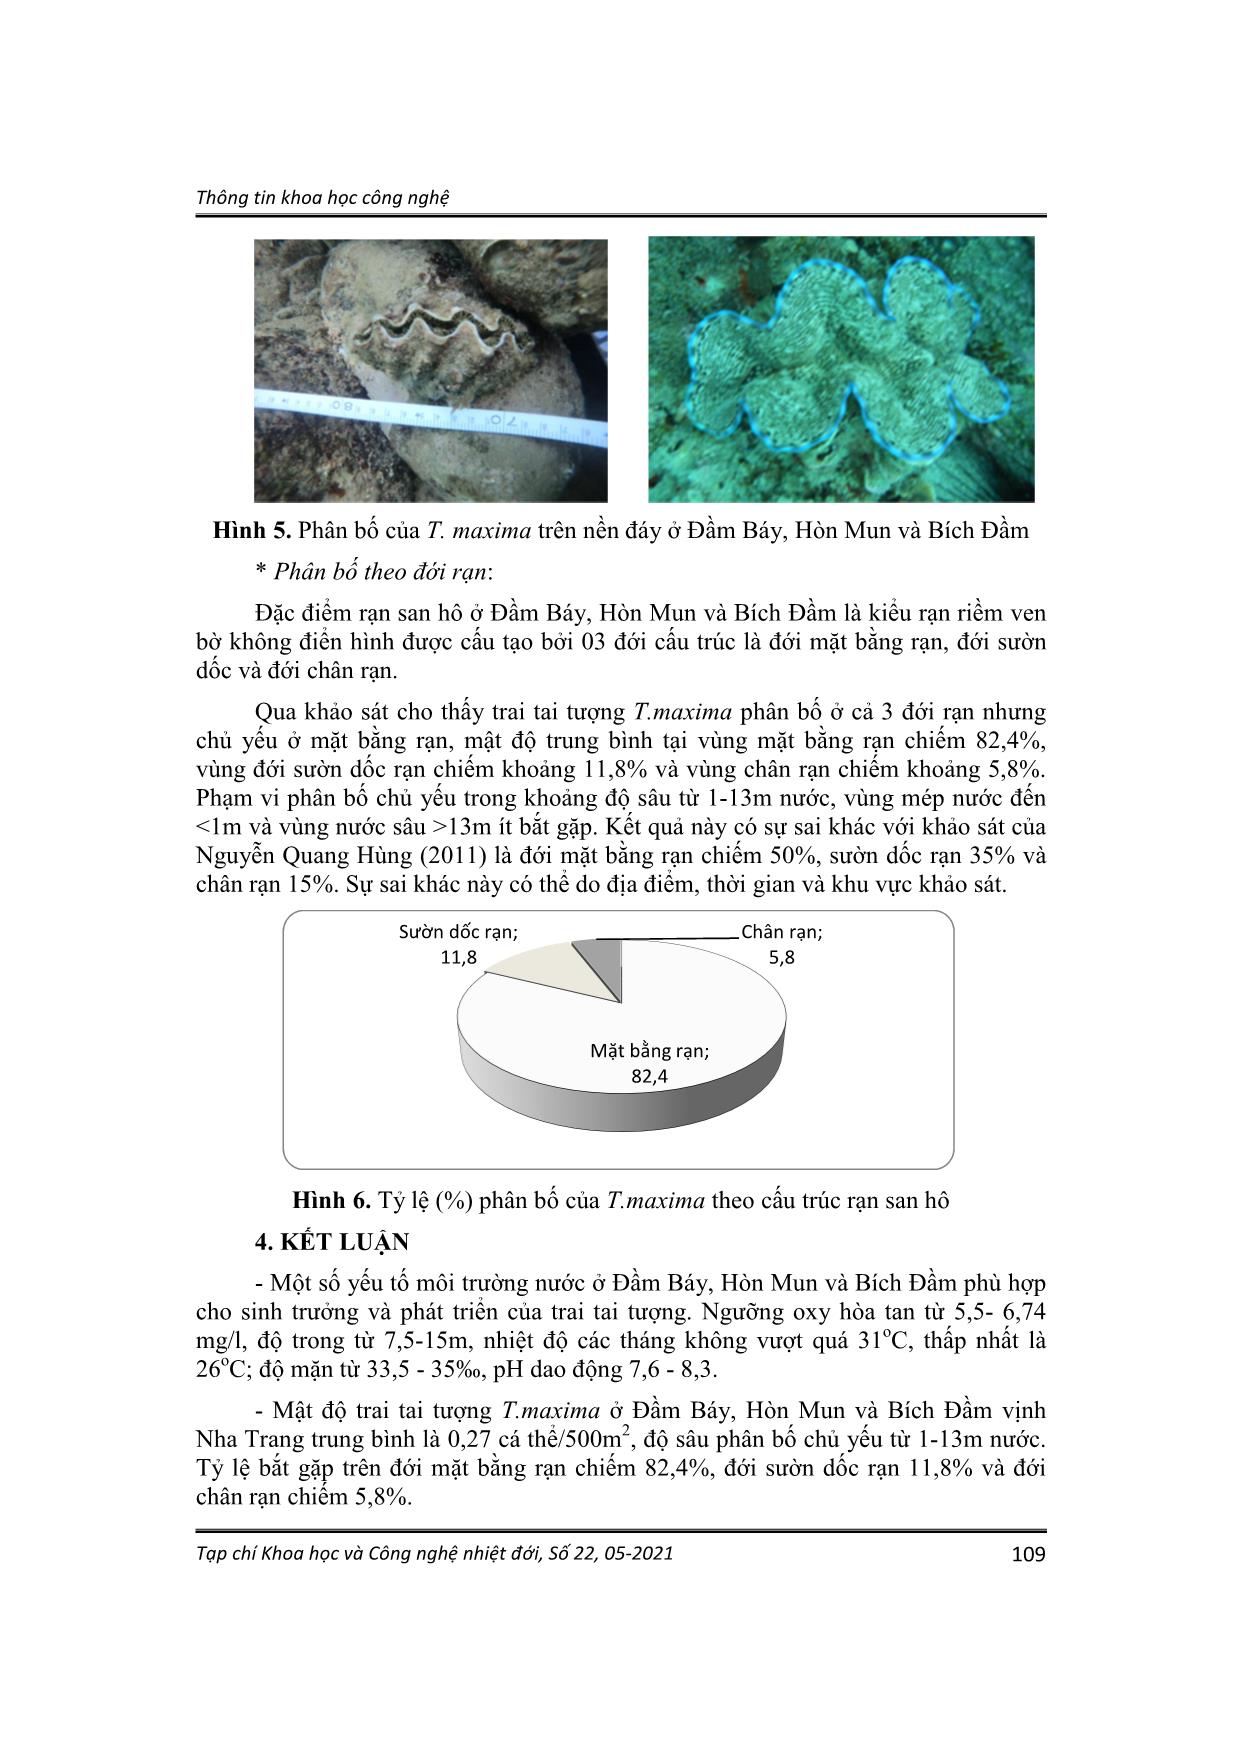 Kết quả khảo sát hiện trạng sự phân bố, mật độ trai tai tượng Tridacna maxima ở vịnh Nha Trang, Khánh Hòa trang 7